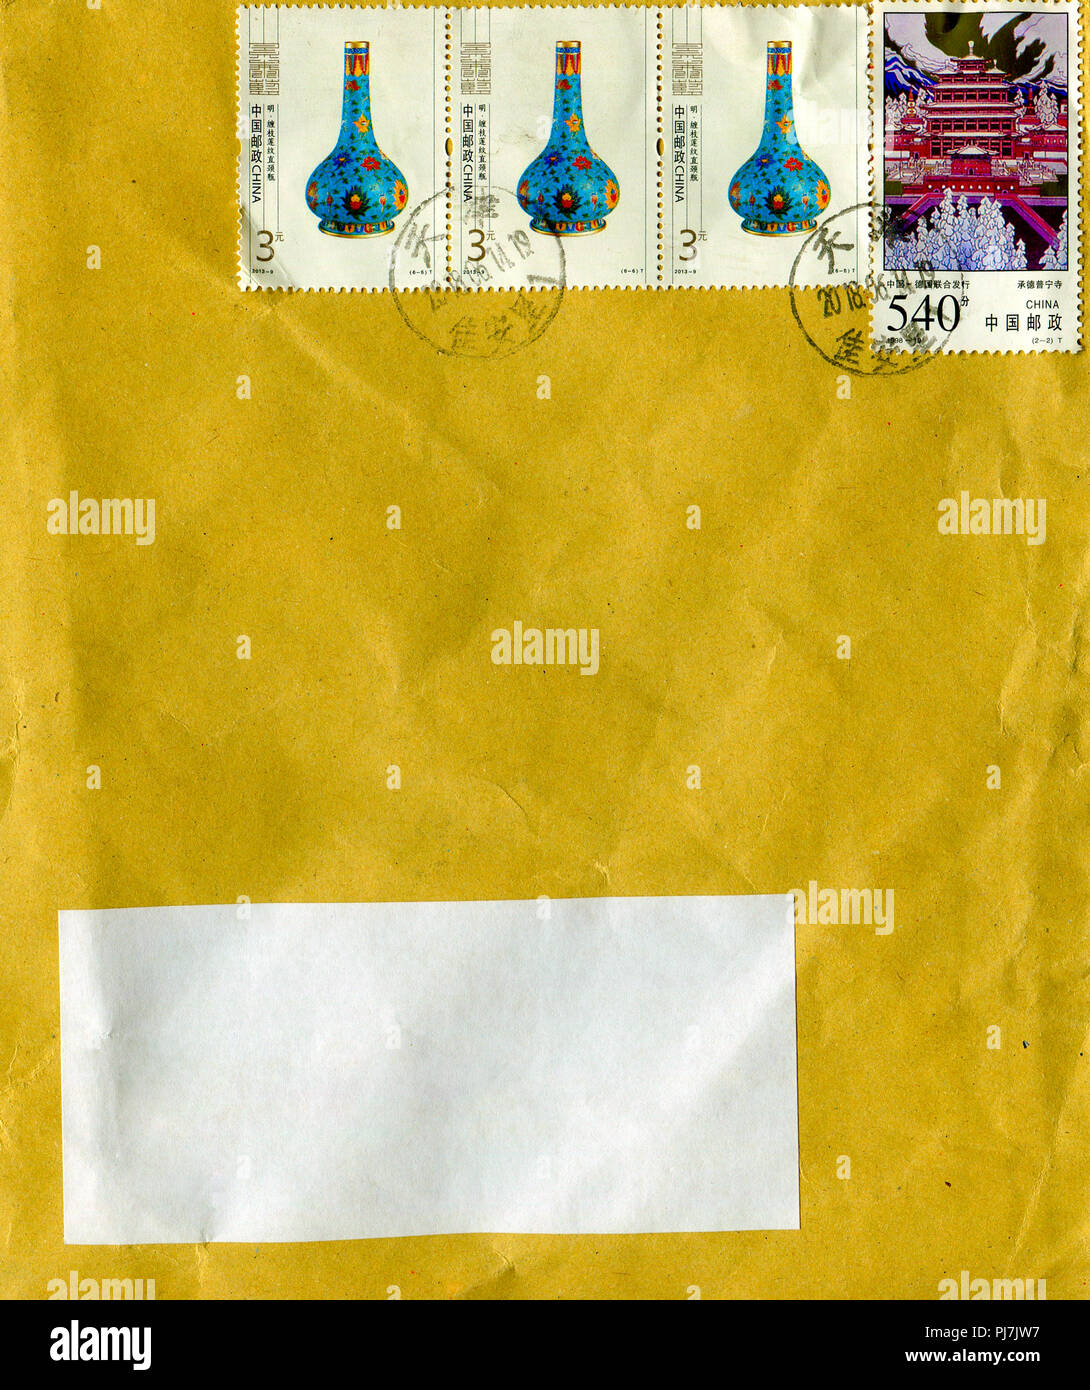 GOMEL, BELARUS - 12. August 2018: Die alten Umschlag, die von China in Gomel, Belarus, 12. August 2018 versendet wurde. Stockfoto